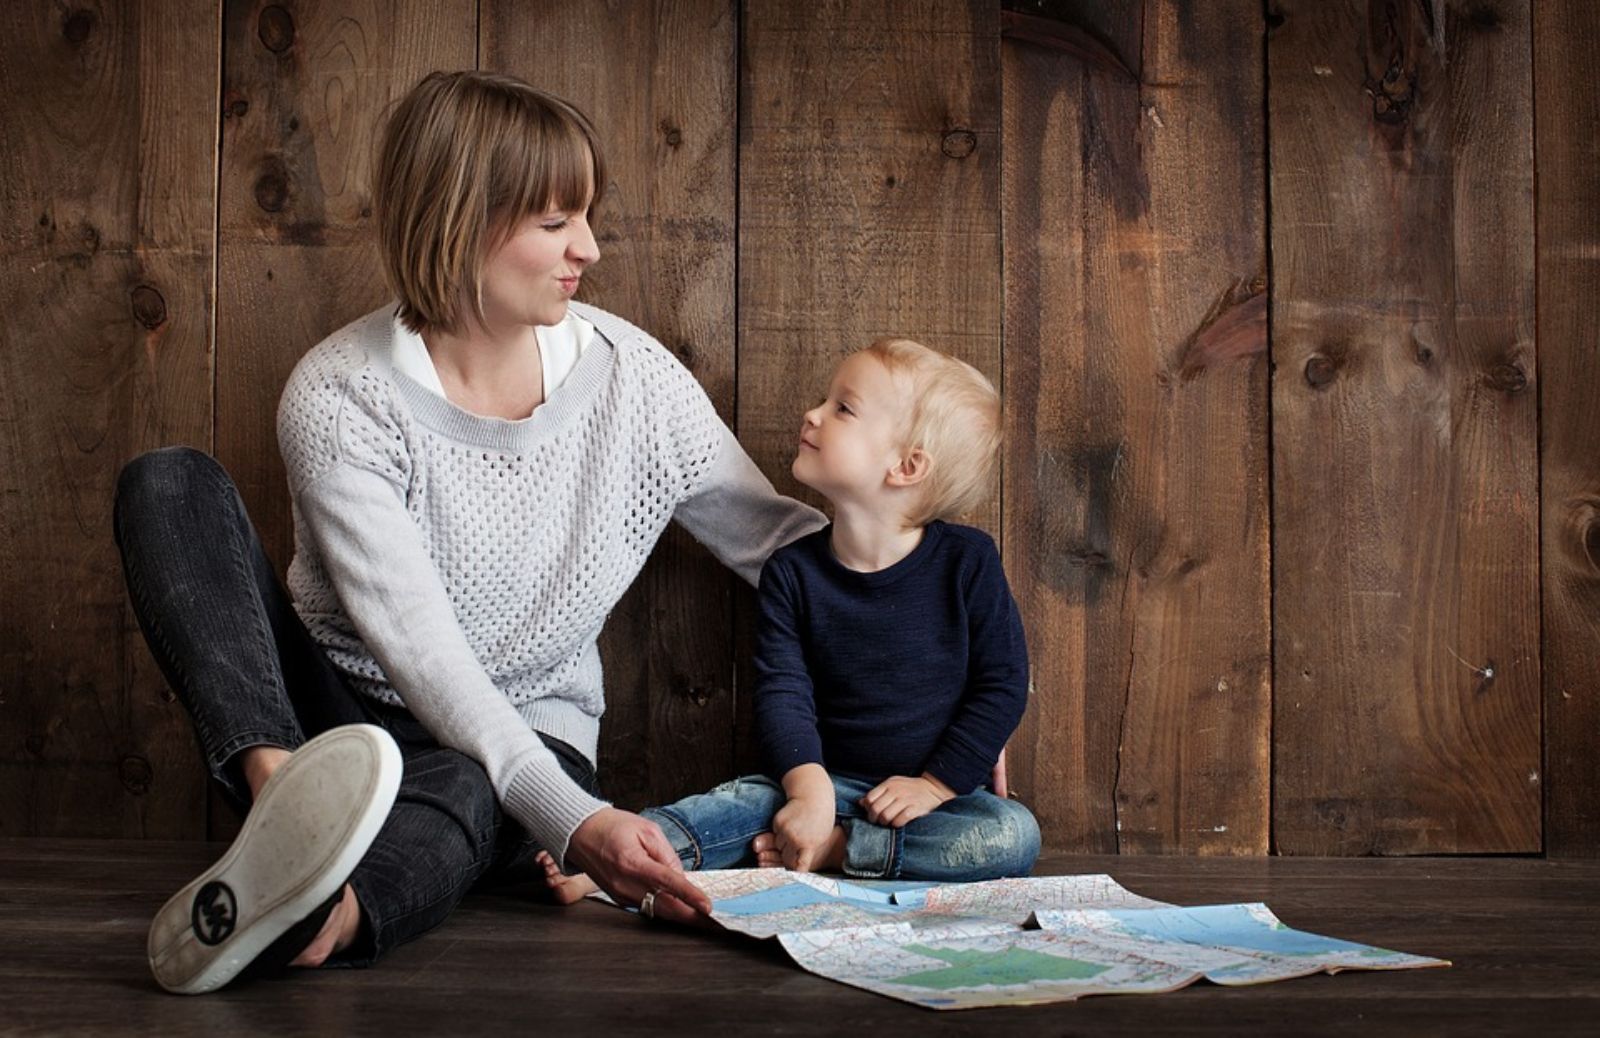 6 cose che devi sapere se vuoi iniziare a lavorare come babysitter